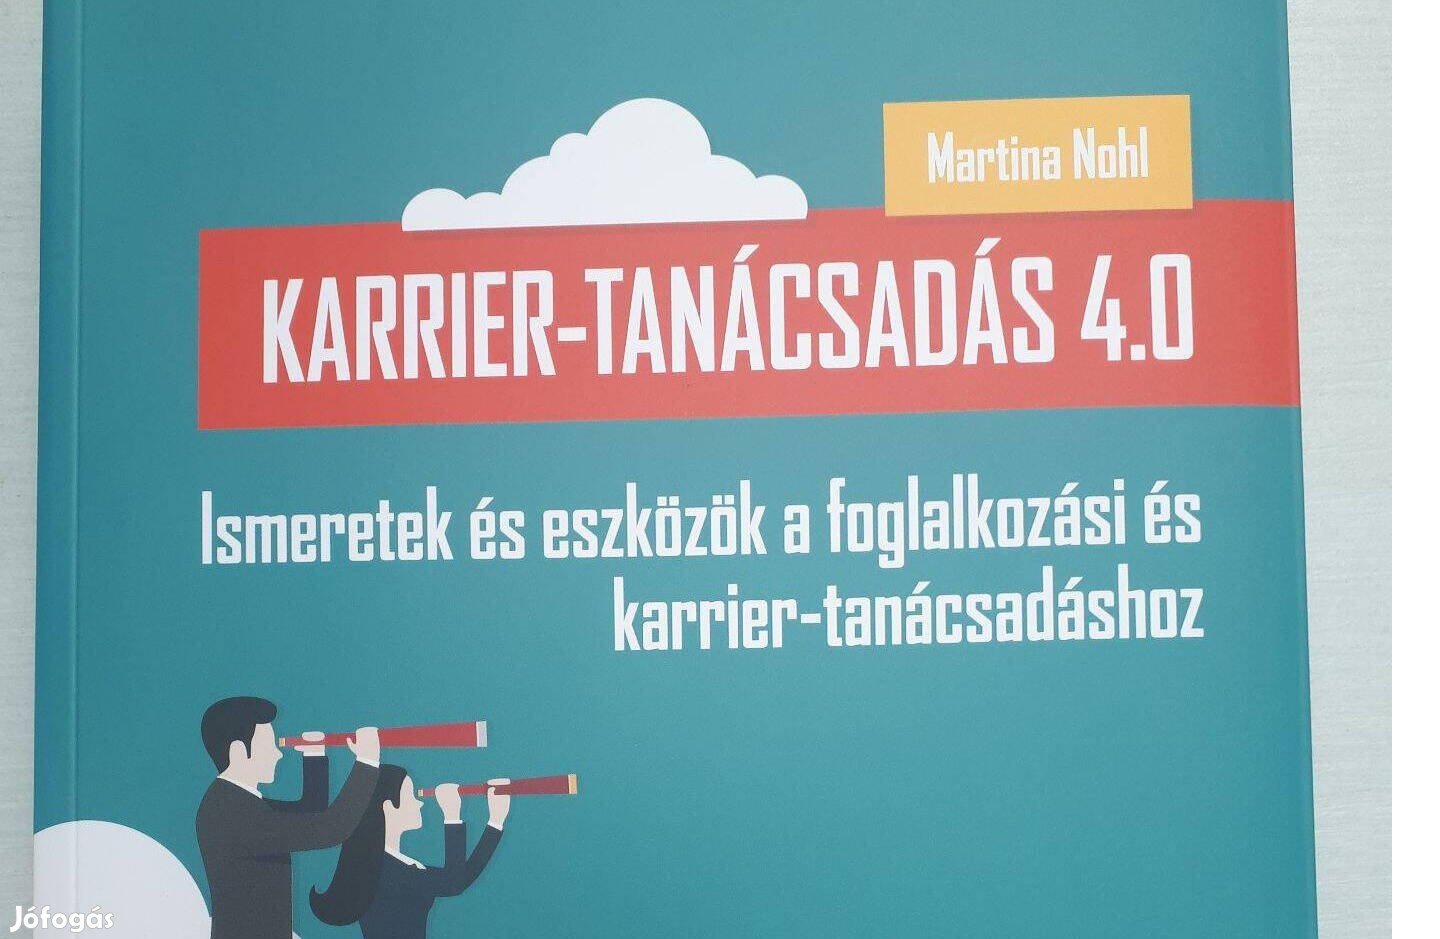 Martina Nohl - Karrier-tanácsadás 4.0